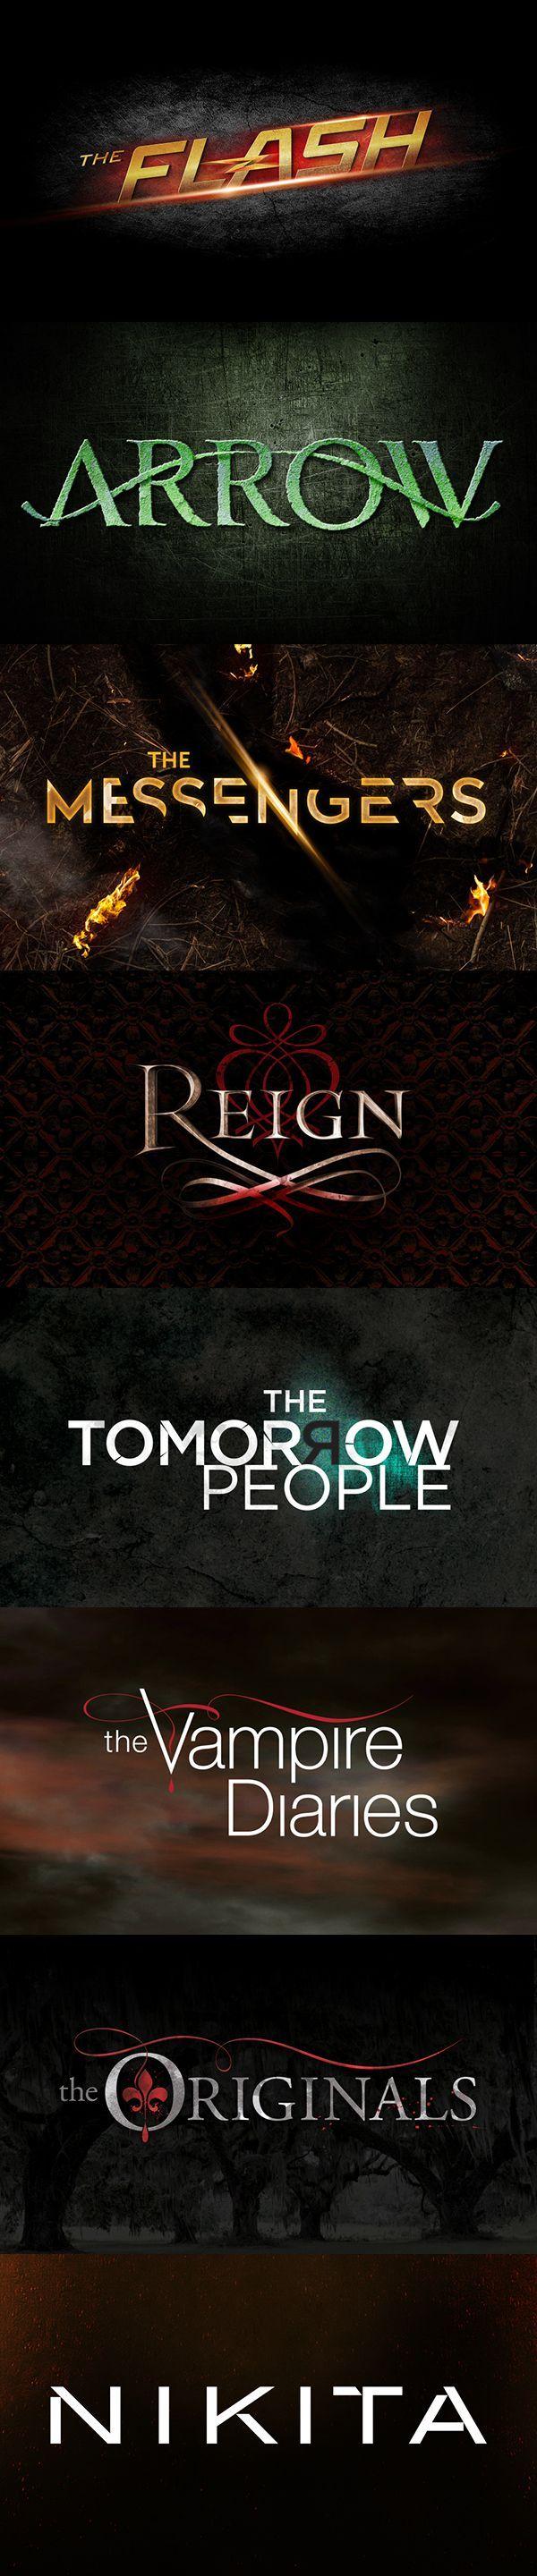 Arrow Show Logo - CW TV Show Logo Design Series 1: The Flash, Arrow, The Messengers ...